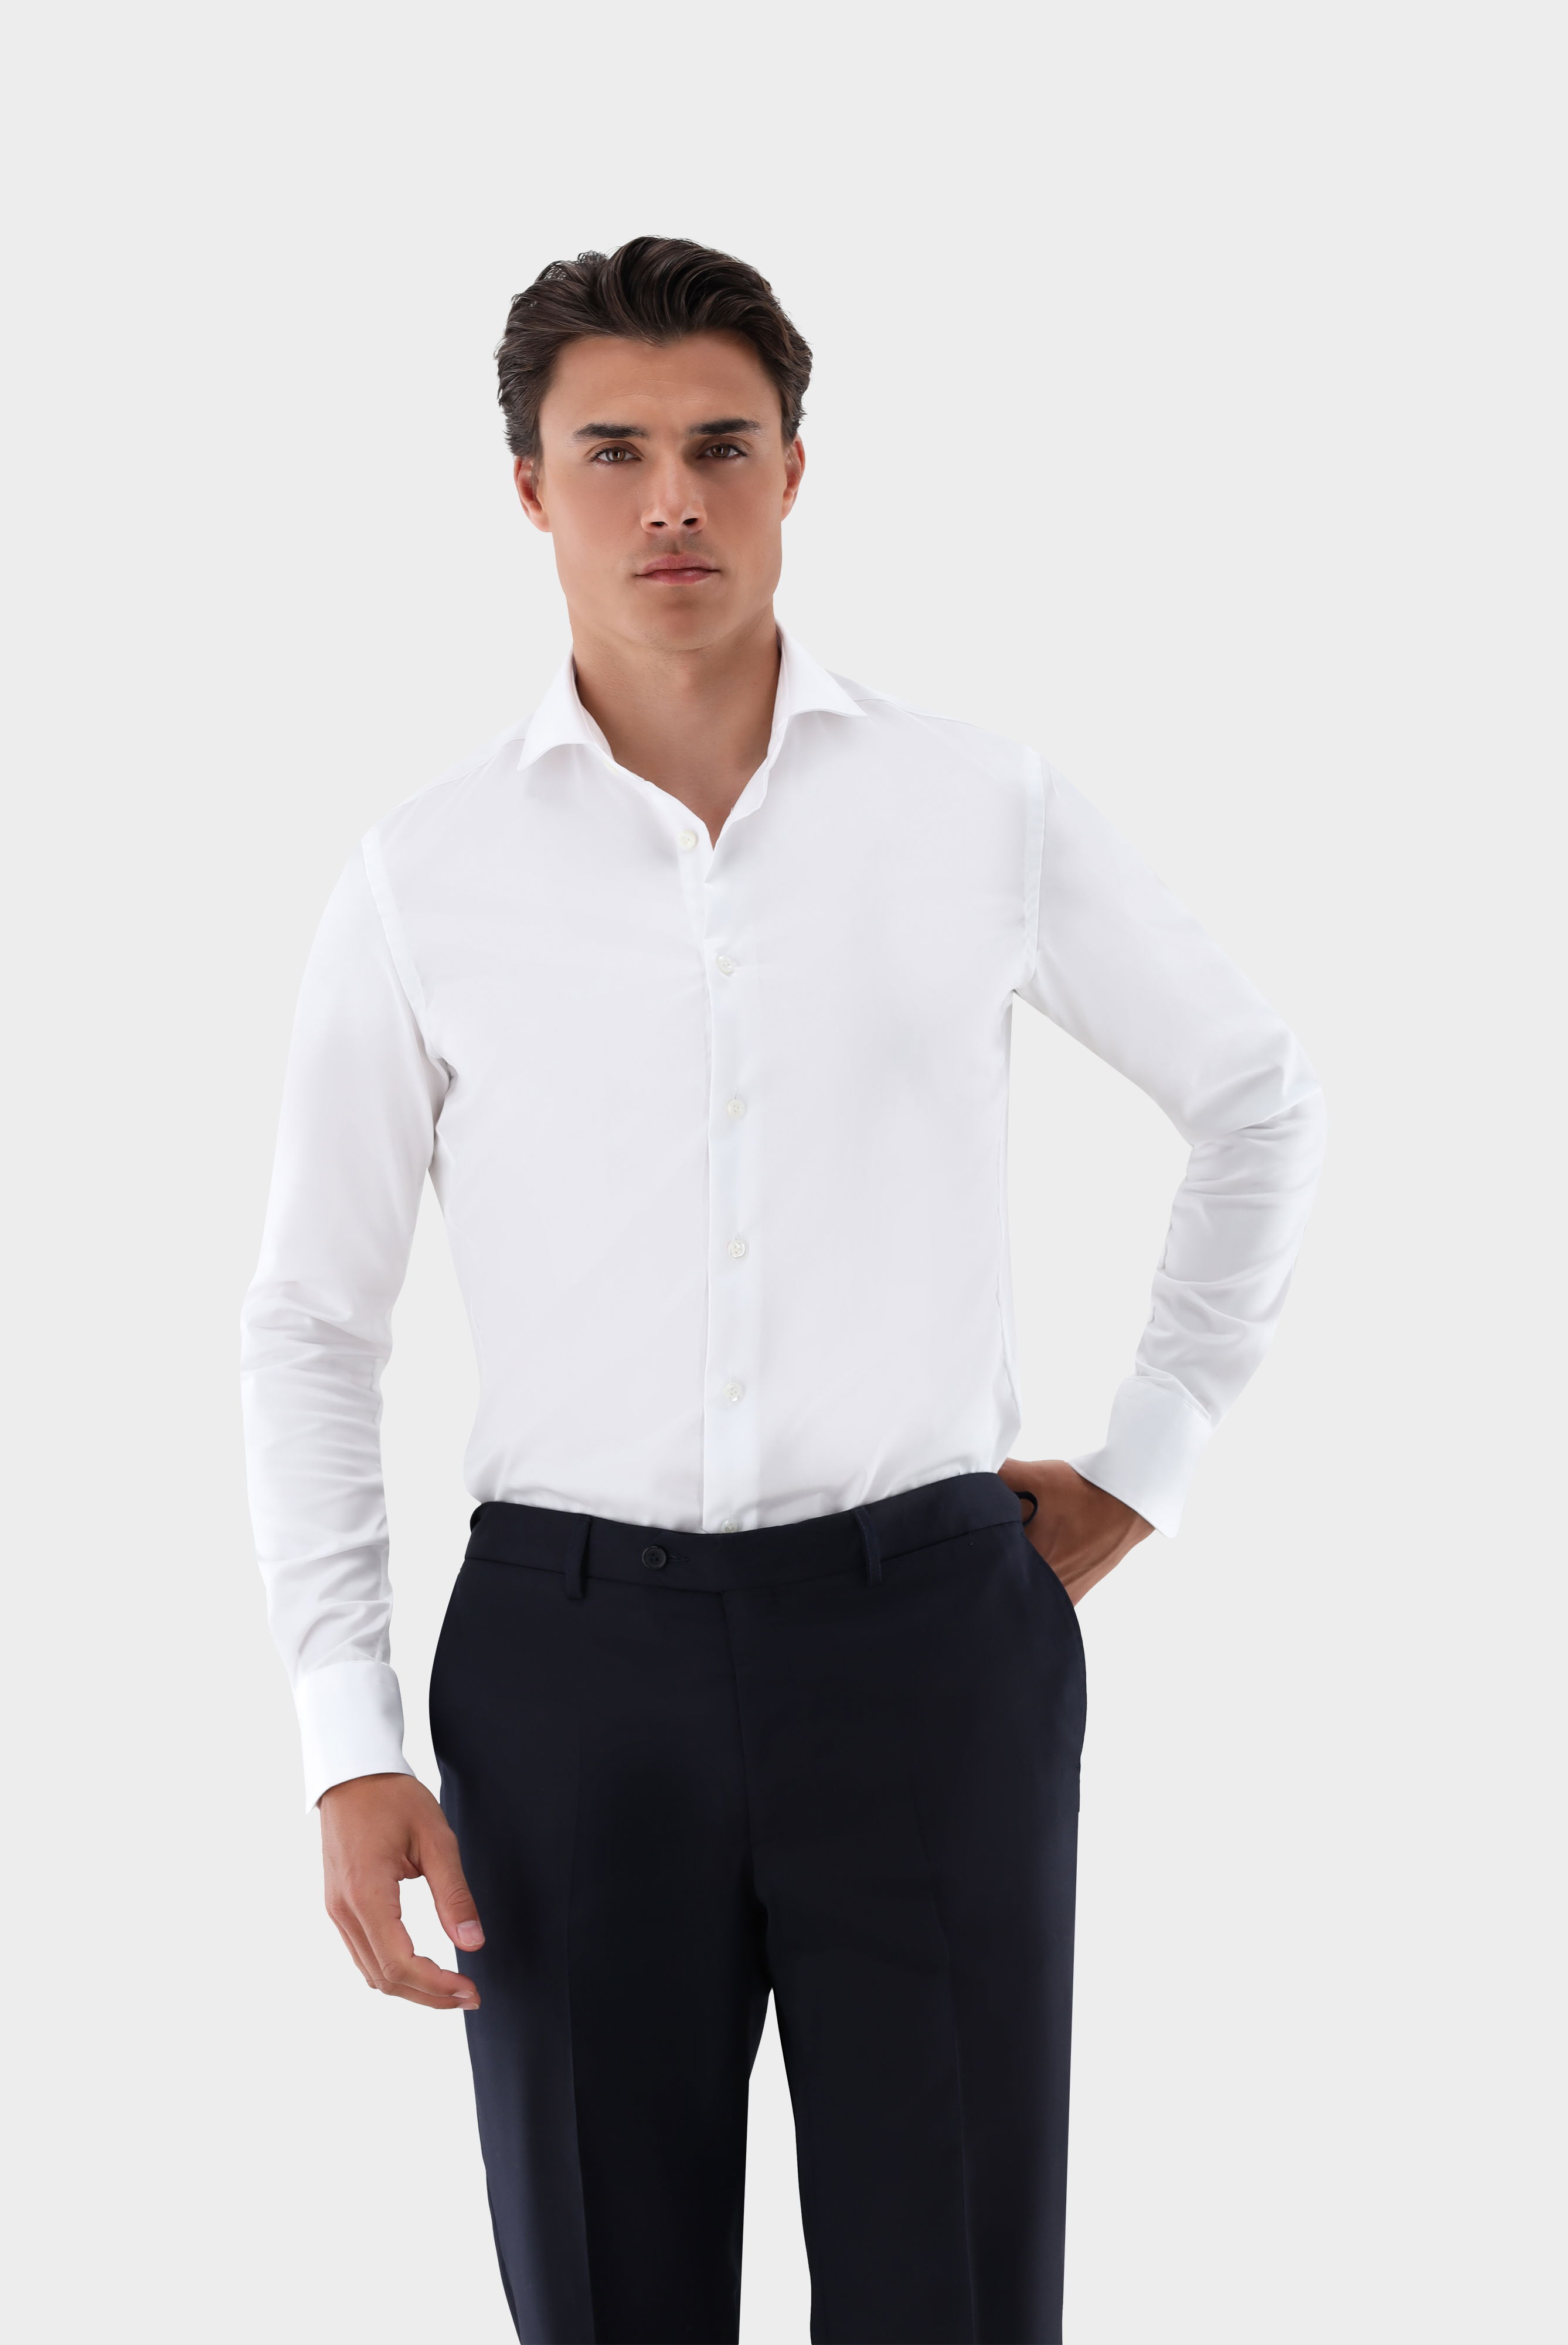 Bügelleichte Hemden+Bügelfreies Hybridshirt mit Jerseyeinsatz Slim Fit+20.2553.0F.132241.000.41